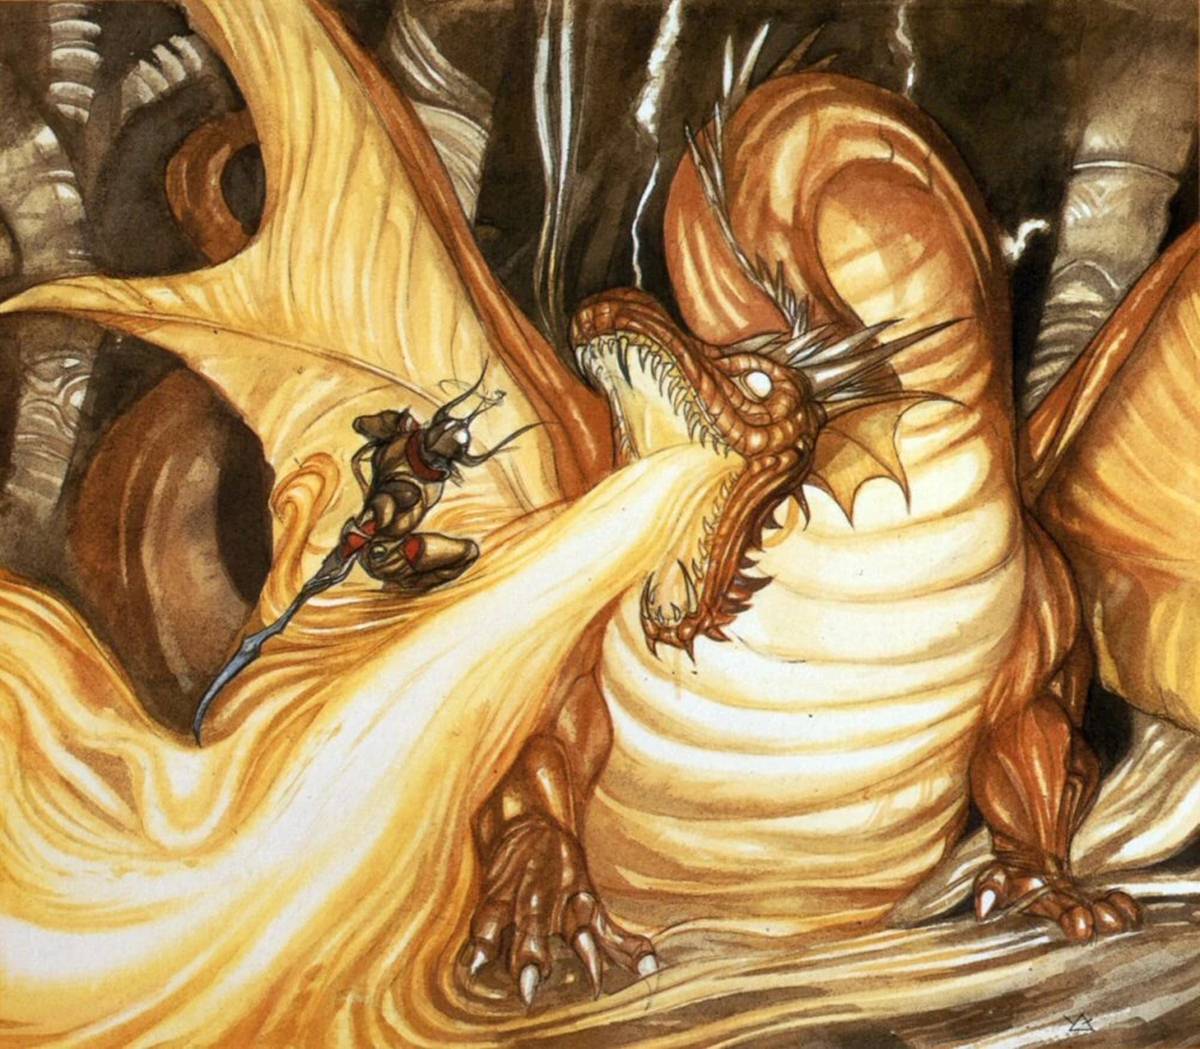 Artwork di Amano dove vediamo il Guerriero della Luce del primo Final Fantasy affrontare un drago.